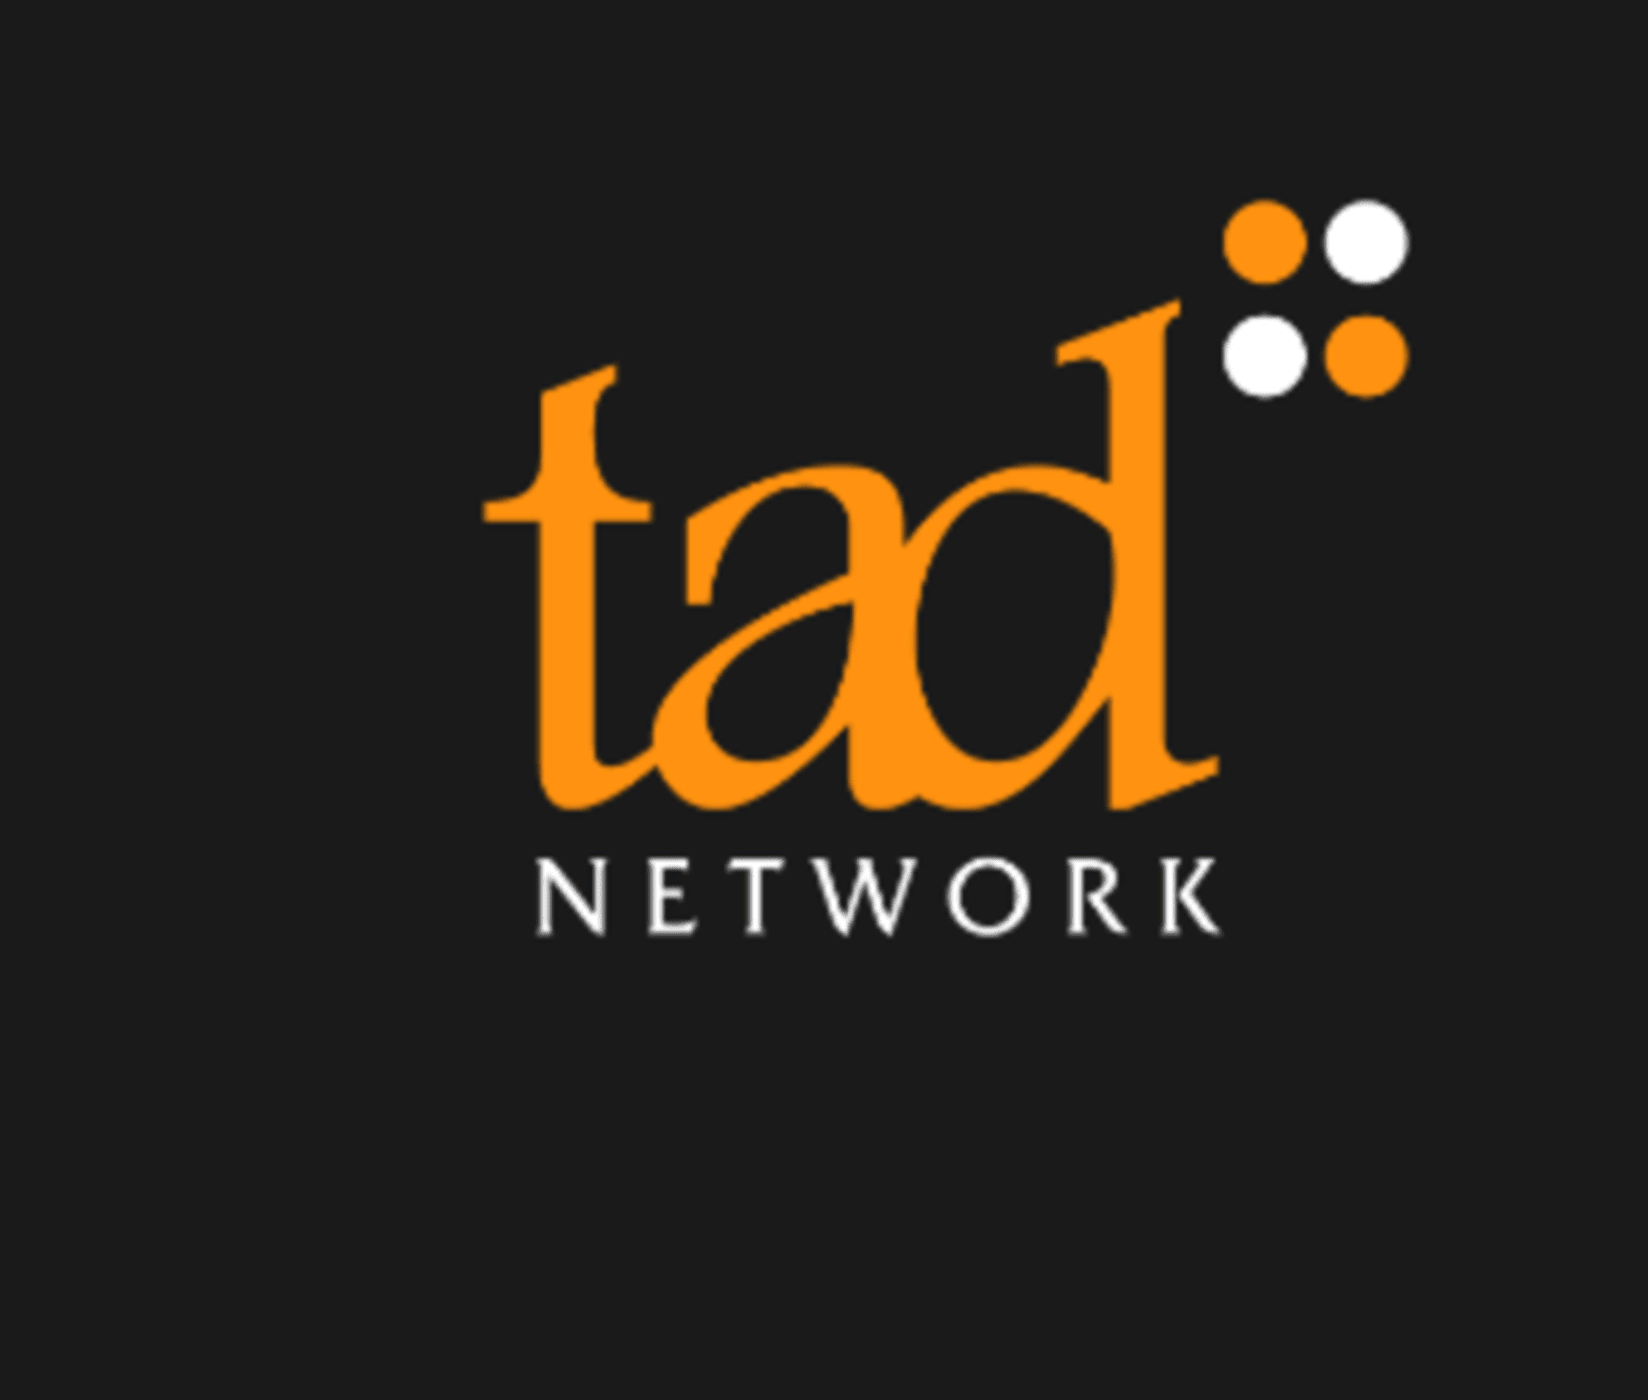 tad network logo (1) (1) (1)